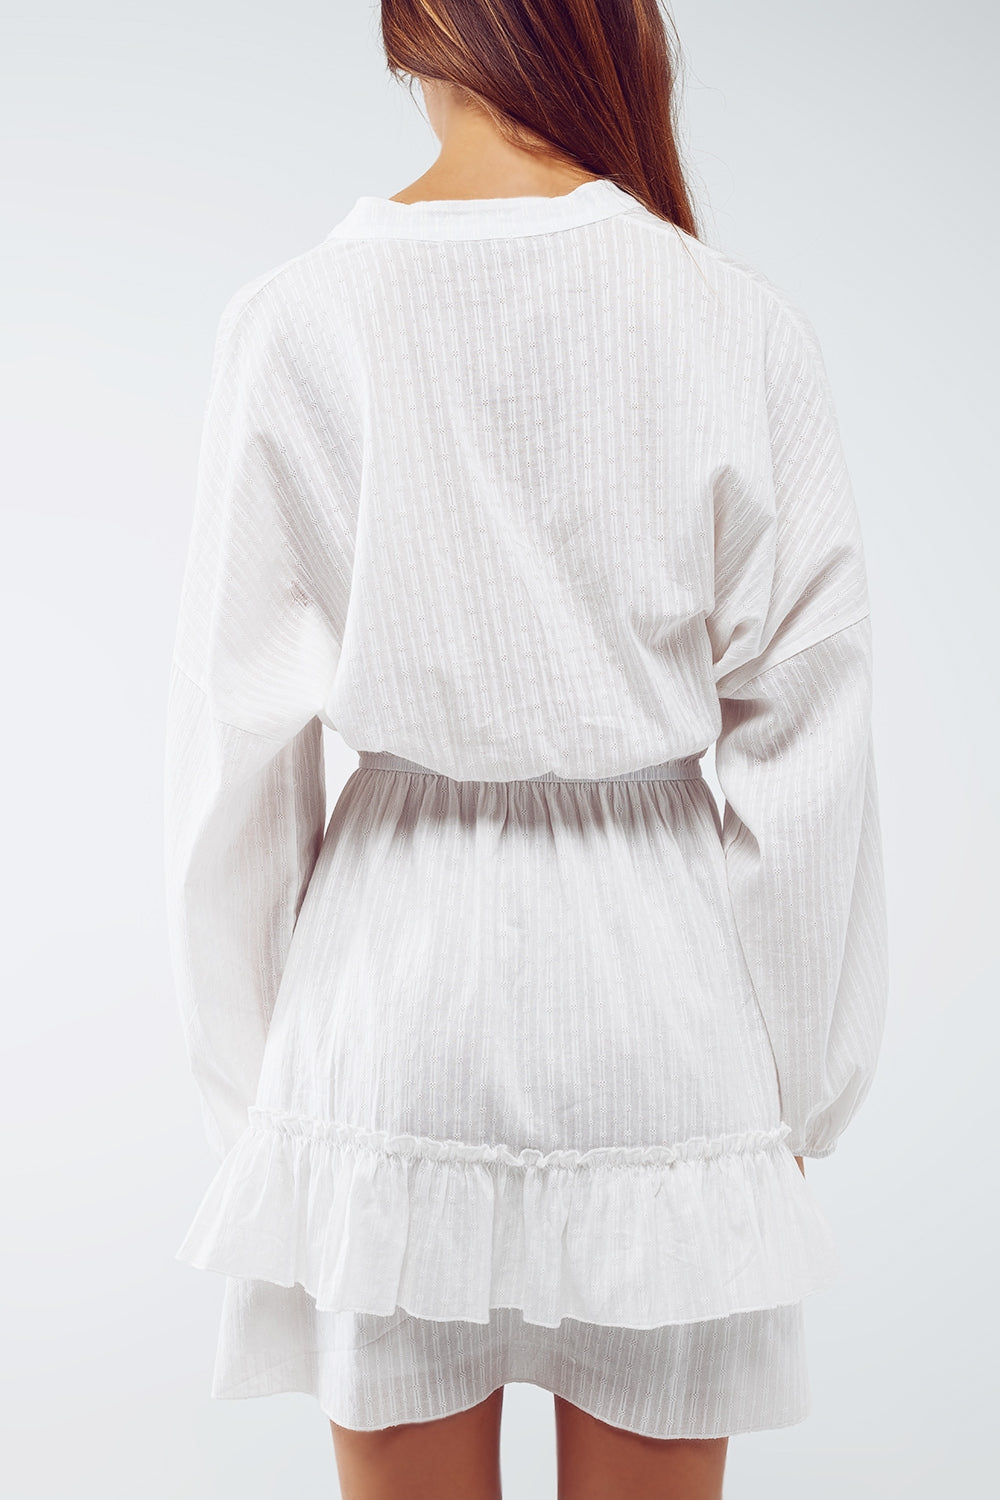 Long Sleeve Skater Textured Short Dress in White - Szua Store